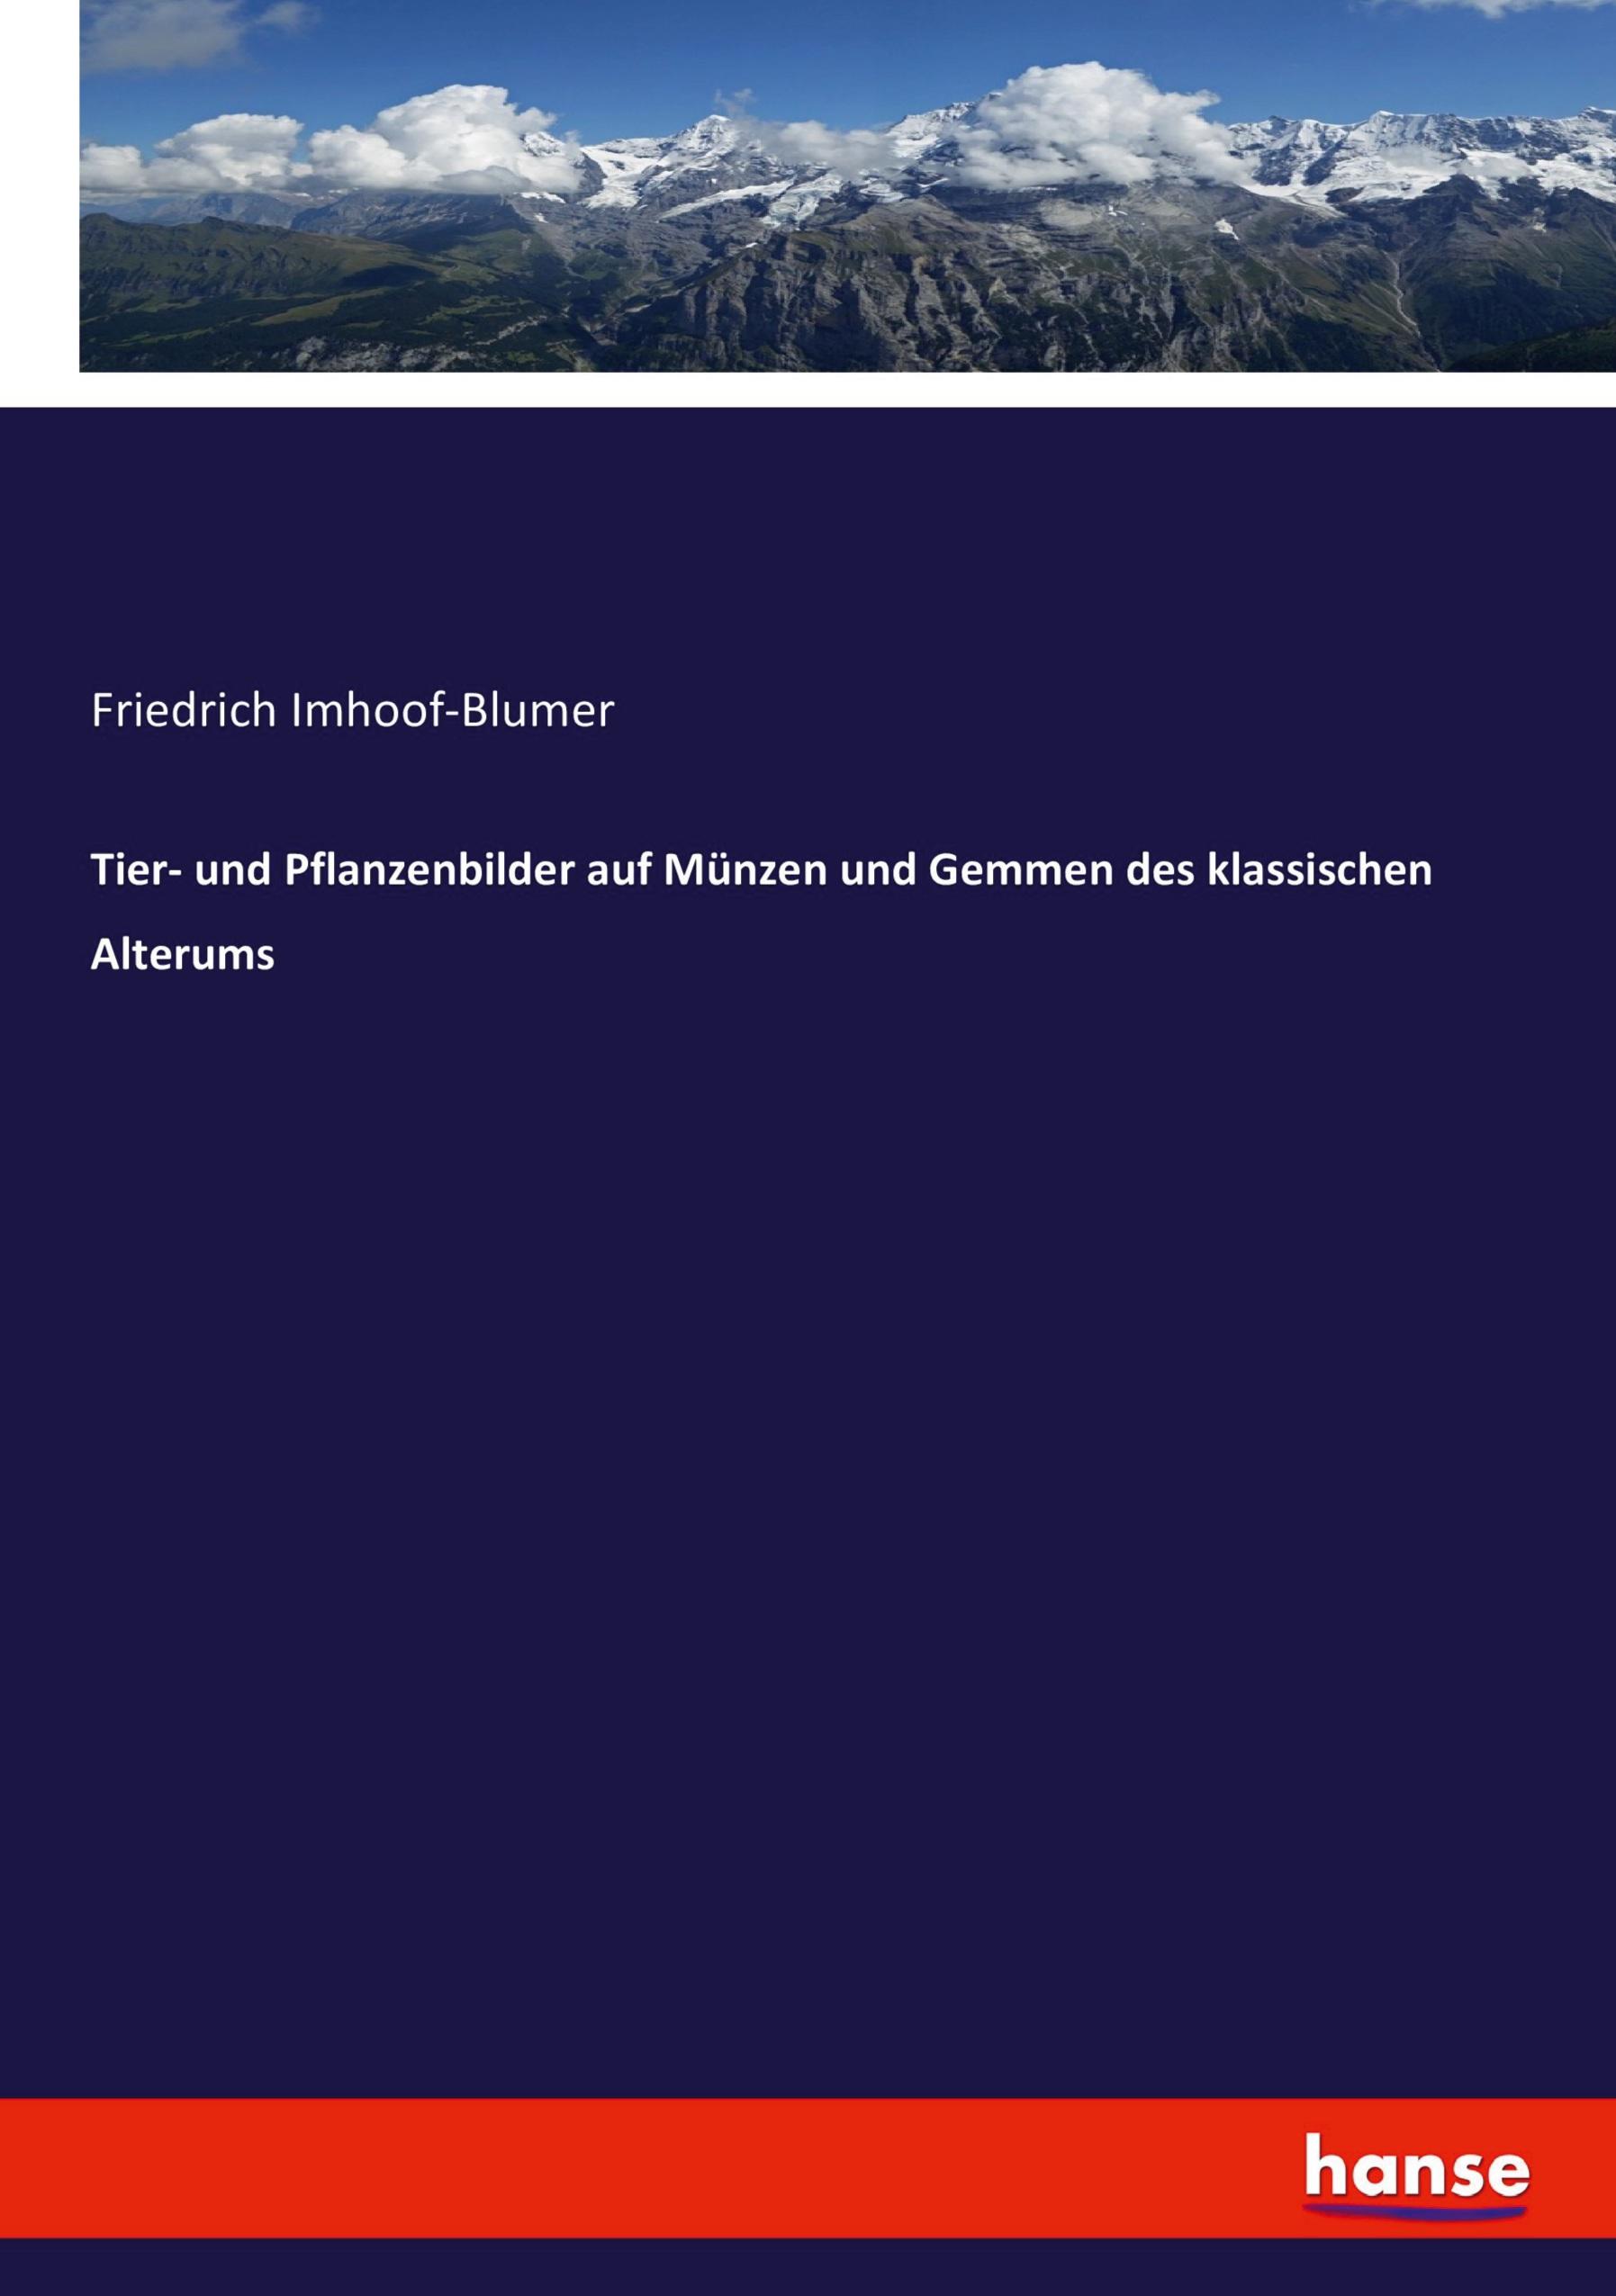 Tier- und Pflanzenbilder auf Muenzen und Gemmen des klassischen Alterums - Imhoof-Blumer, Friedrich